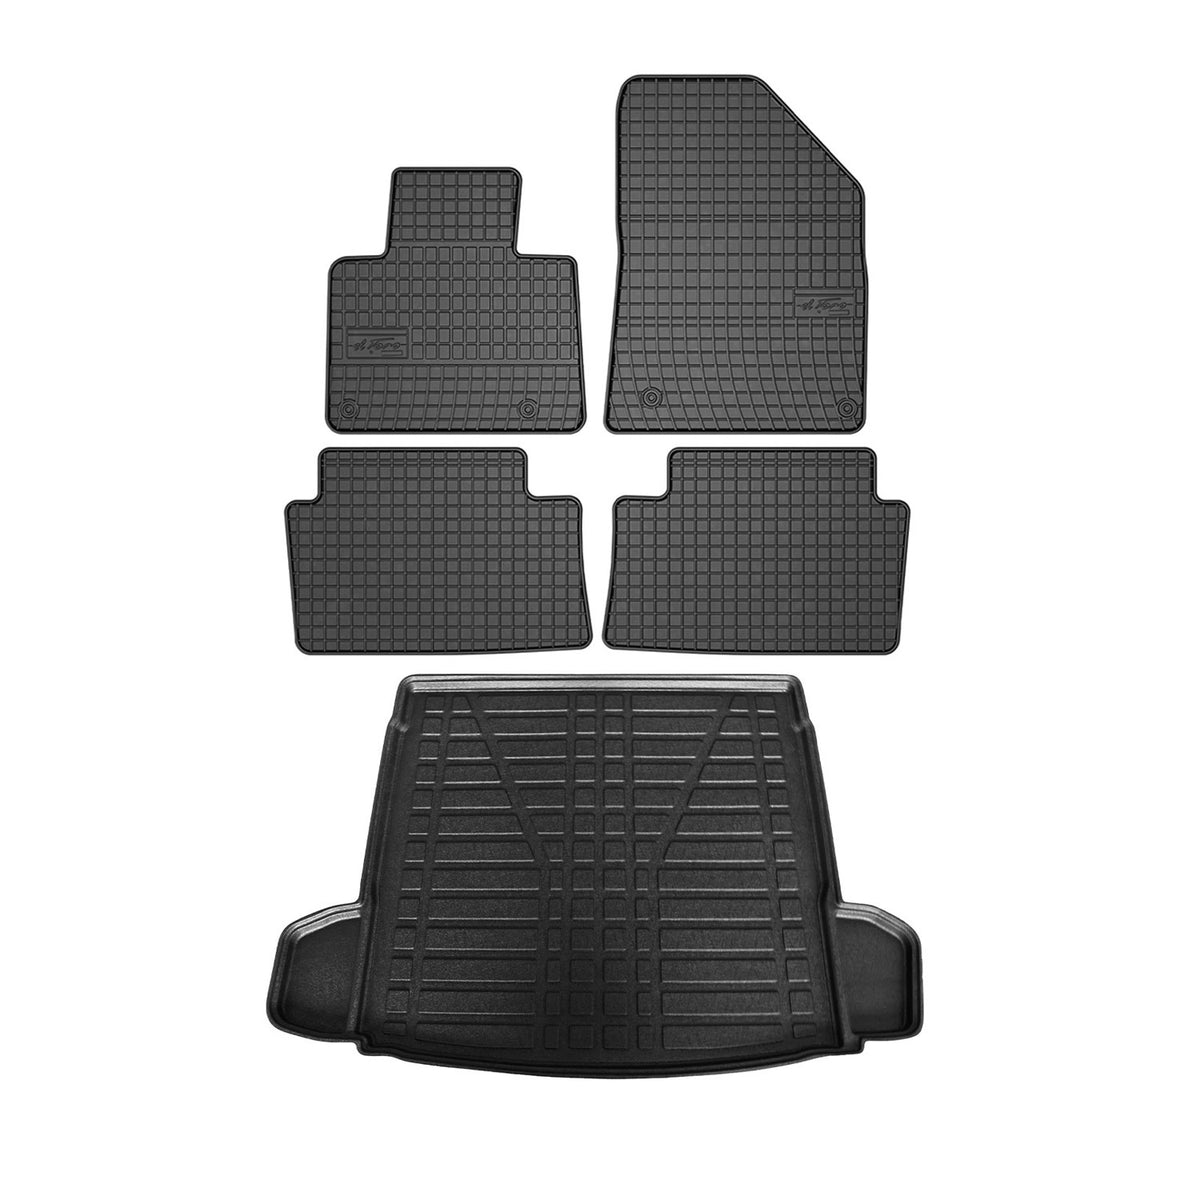 Fußmatten & Kofferraumwanne Set für Citroen C5 2008-2017 Gummi TPE Schwarz 5x